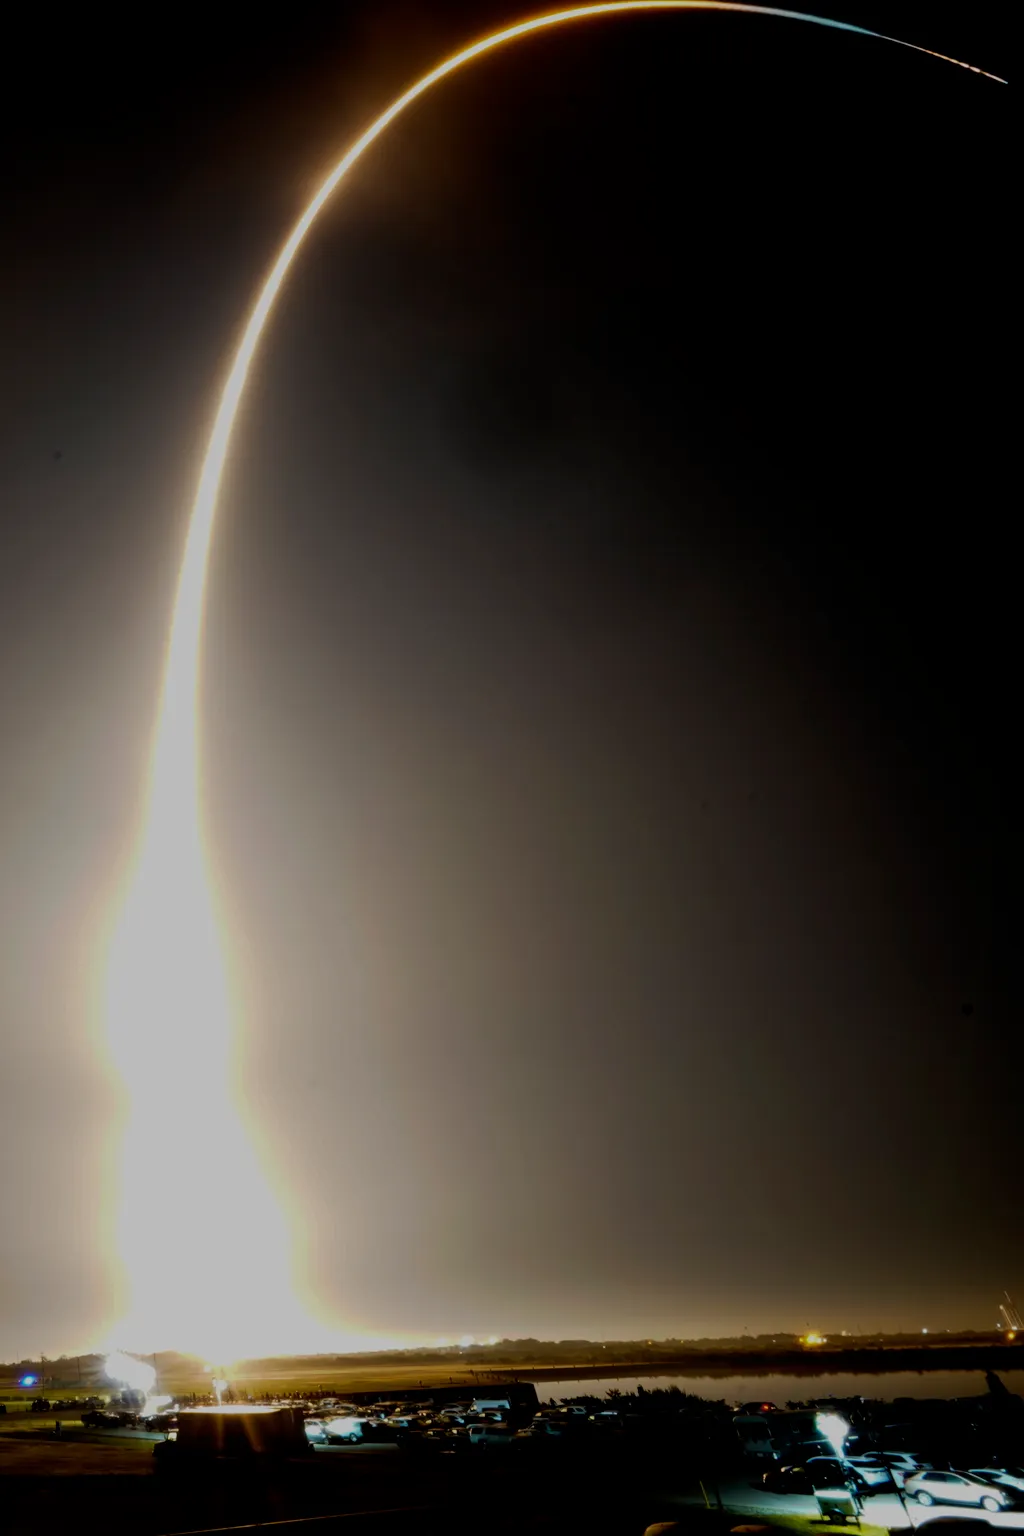 Amerikai holdrakéta tesztje
Az Orion amerikai Hold-űrhajó egy Artemis hordozórakétával összekapcsolva elindul a Kennedy Űrközpont kilövőállásáról a floridai Cape Canaveralben 2022. november 16-án. Az űrhajó fedélzetén csak három kísérleti bábu utaz 